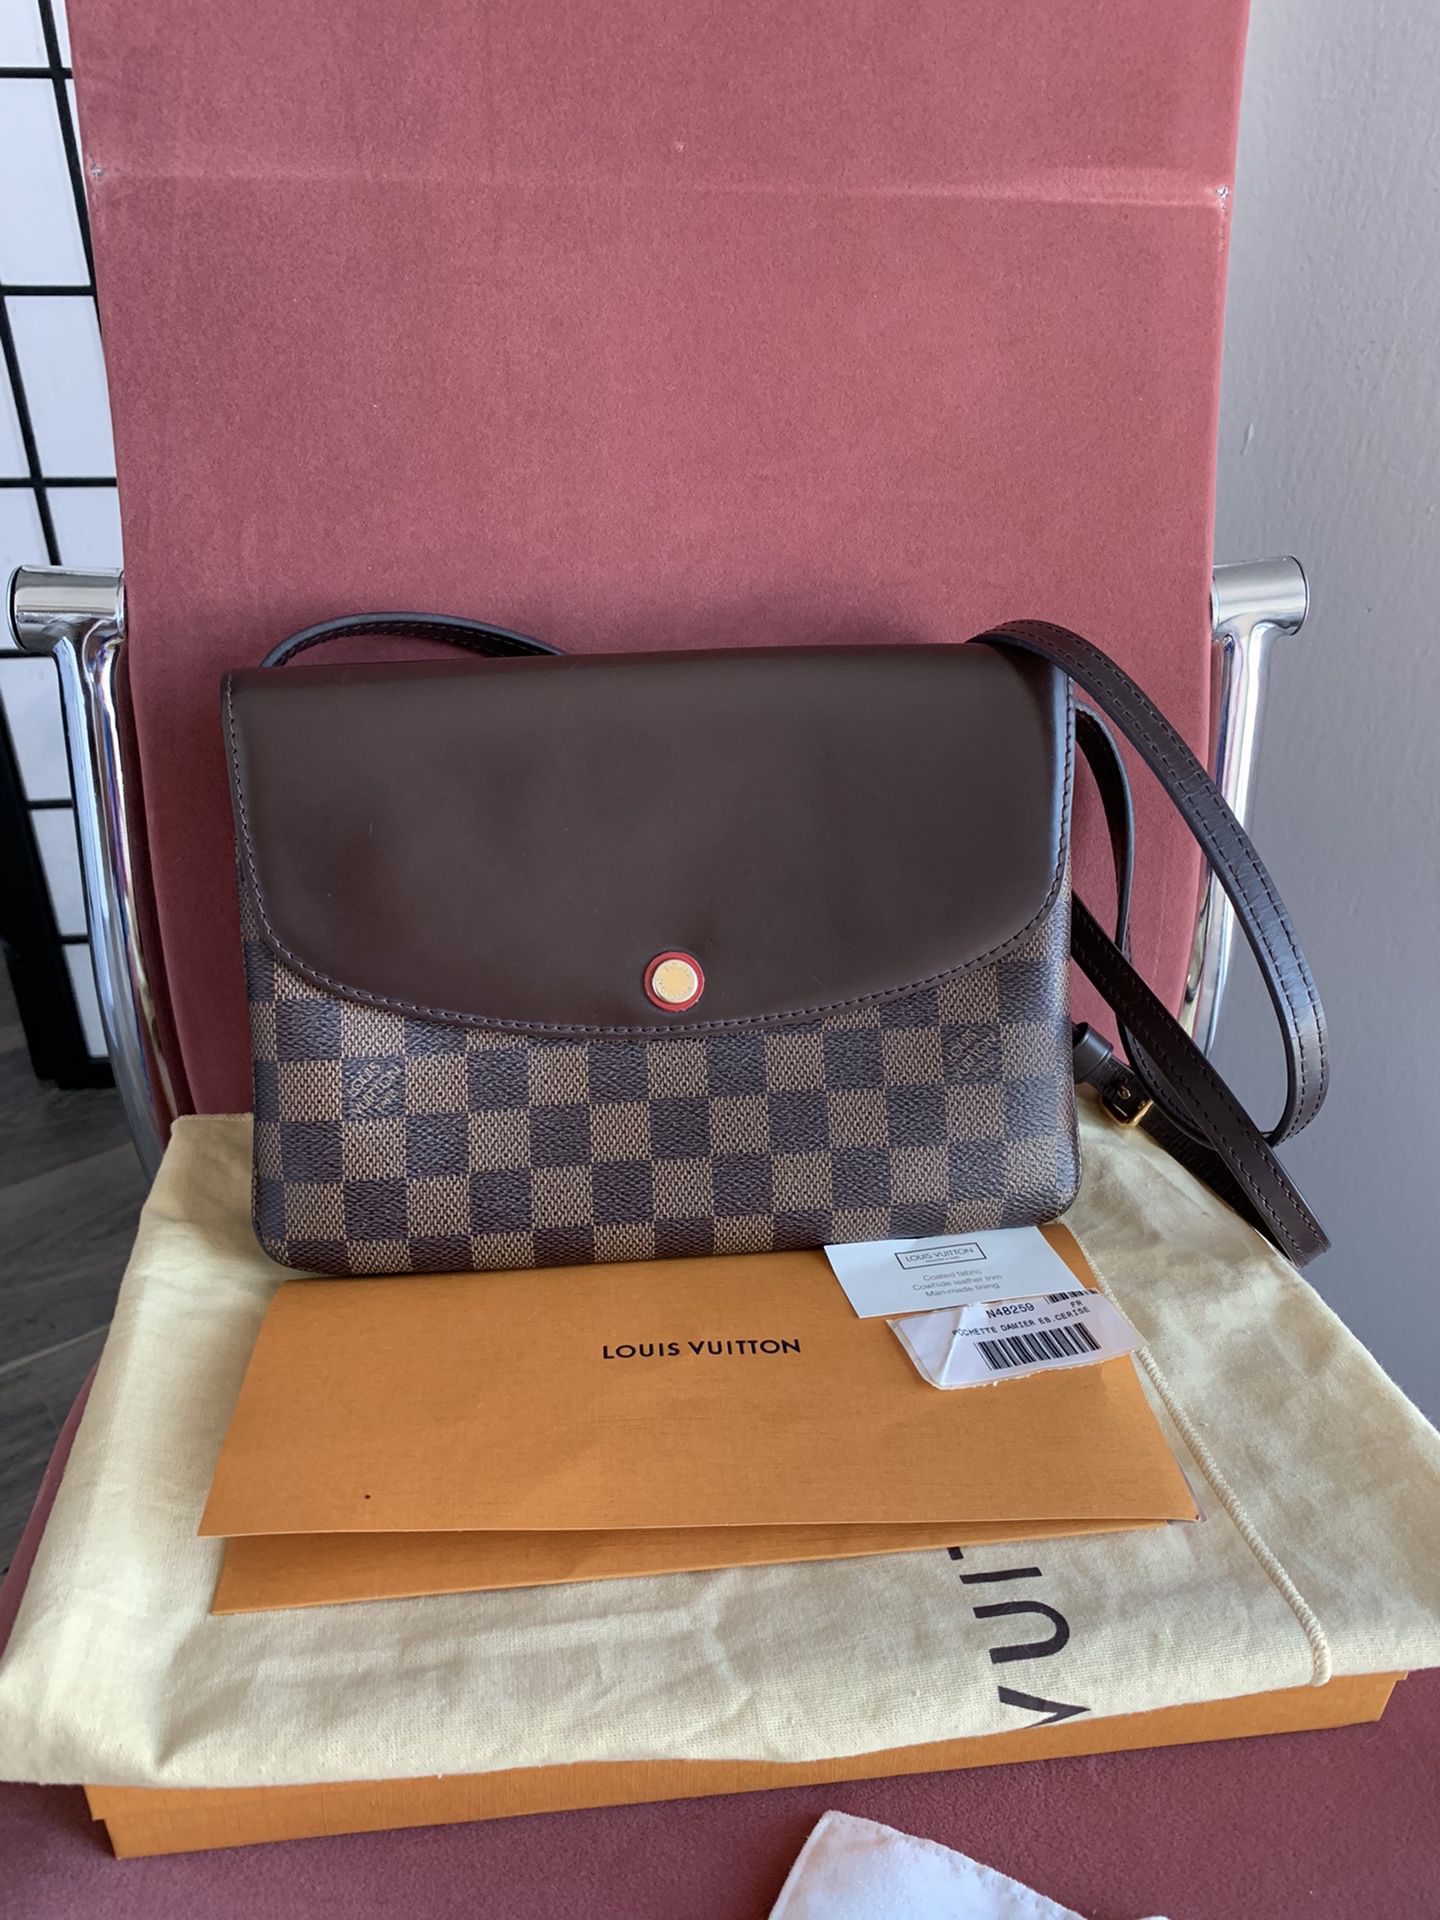 Authentic Louis Vuitton twinset damier crossbody bag